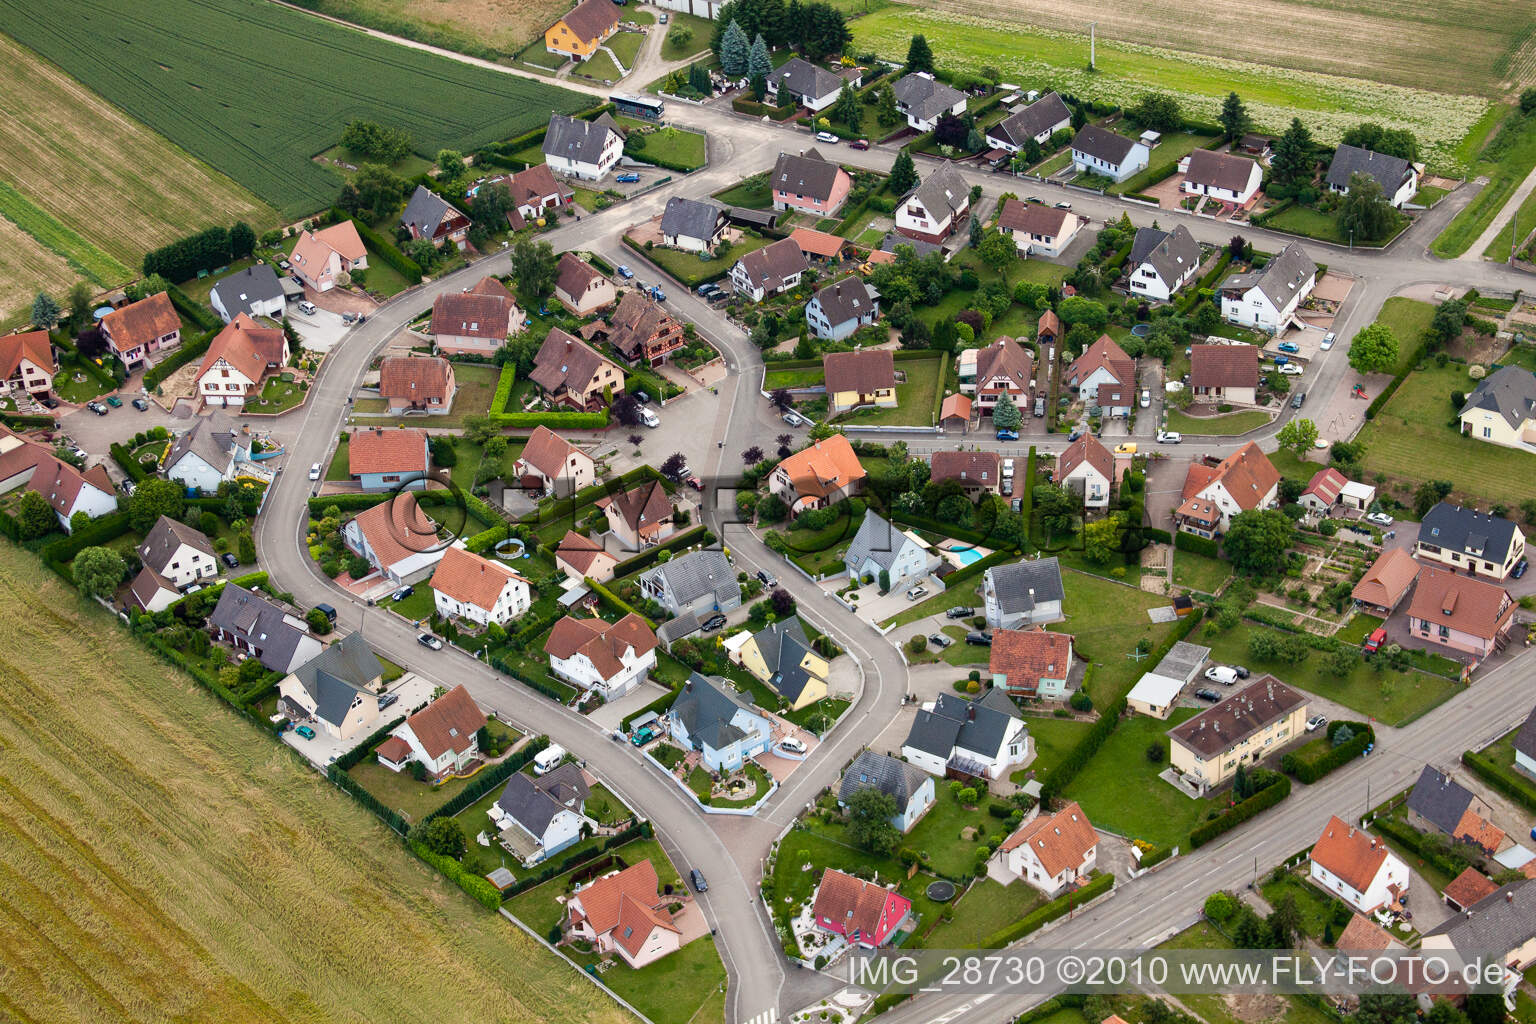 Scheibenhardt in Scheibenhard in the state Bas-Rhin, France from a drone